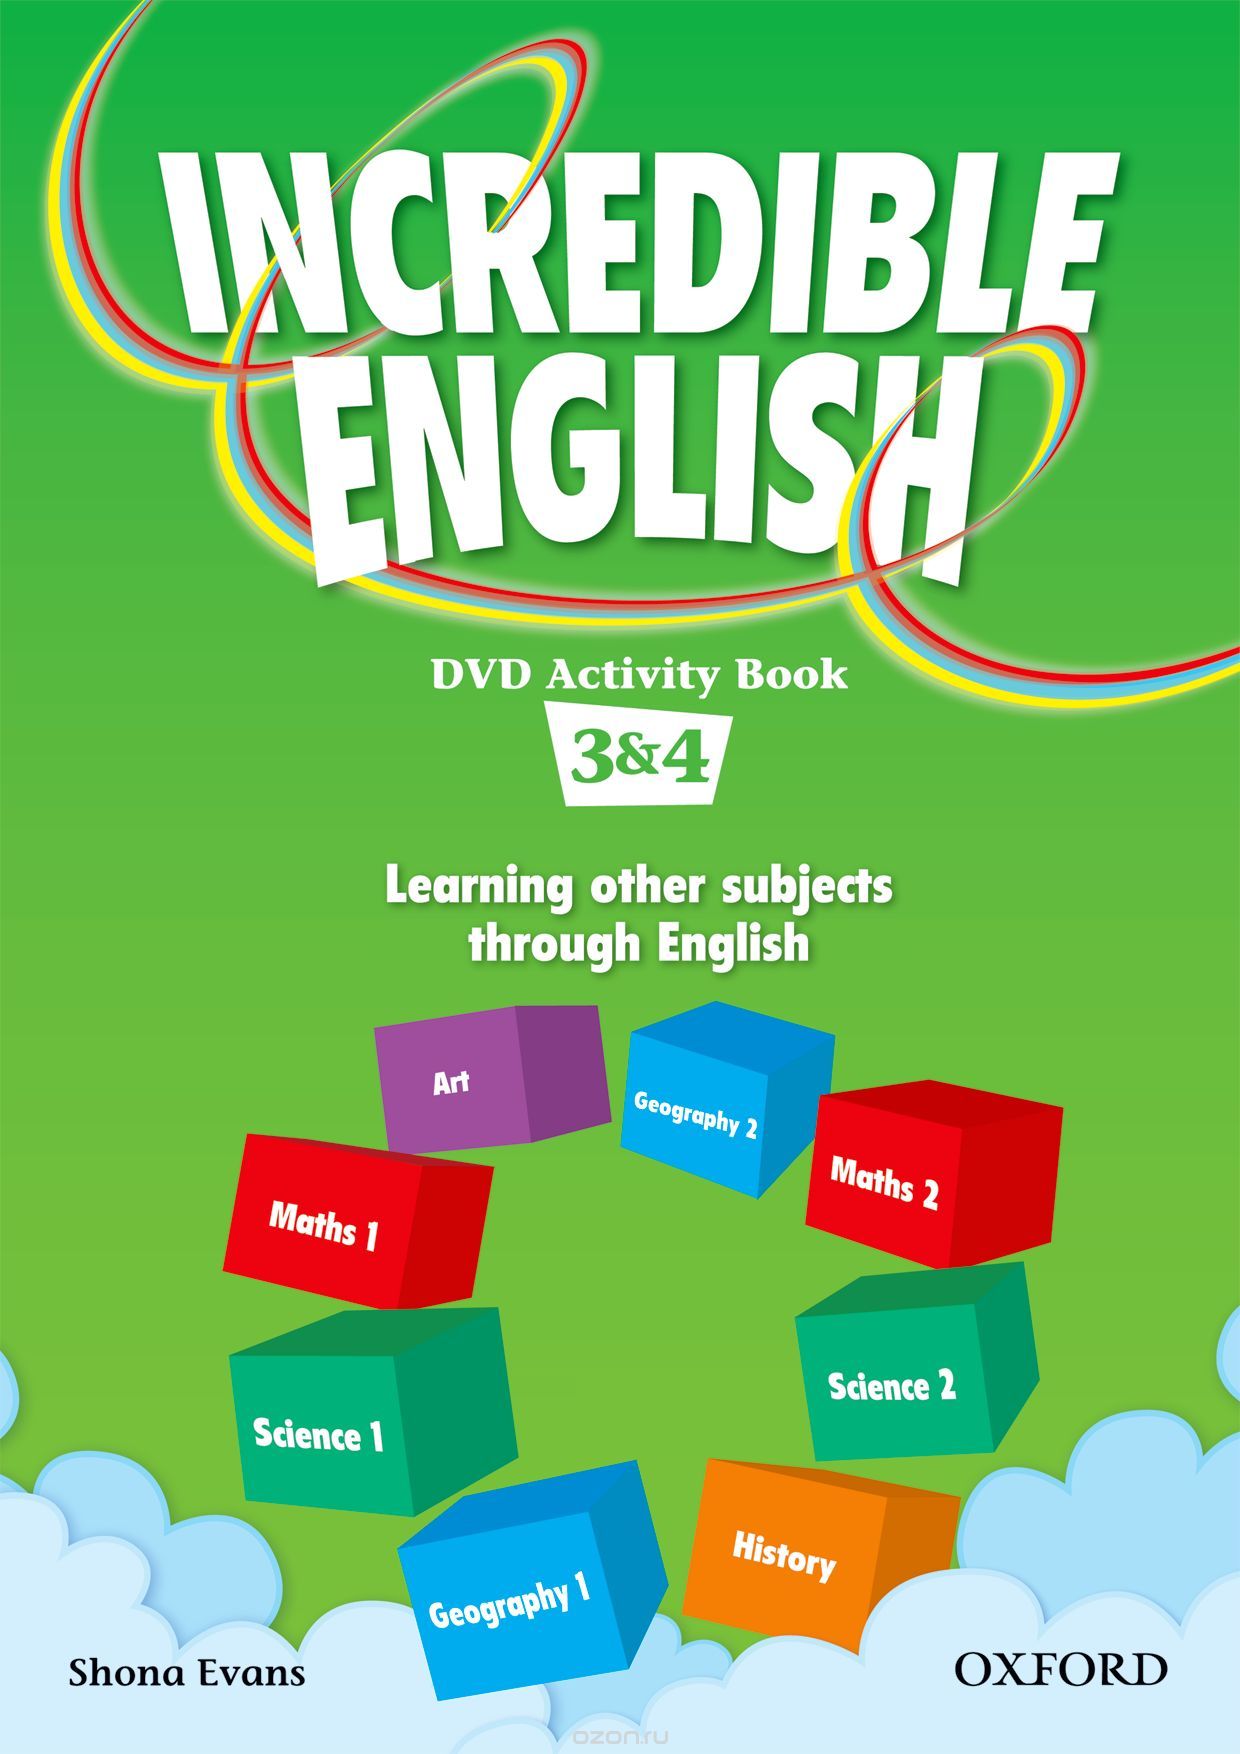 INCREDIBLE ENGLISHLISH 3&4 DVD AB